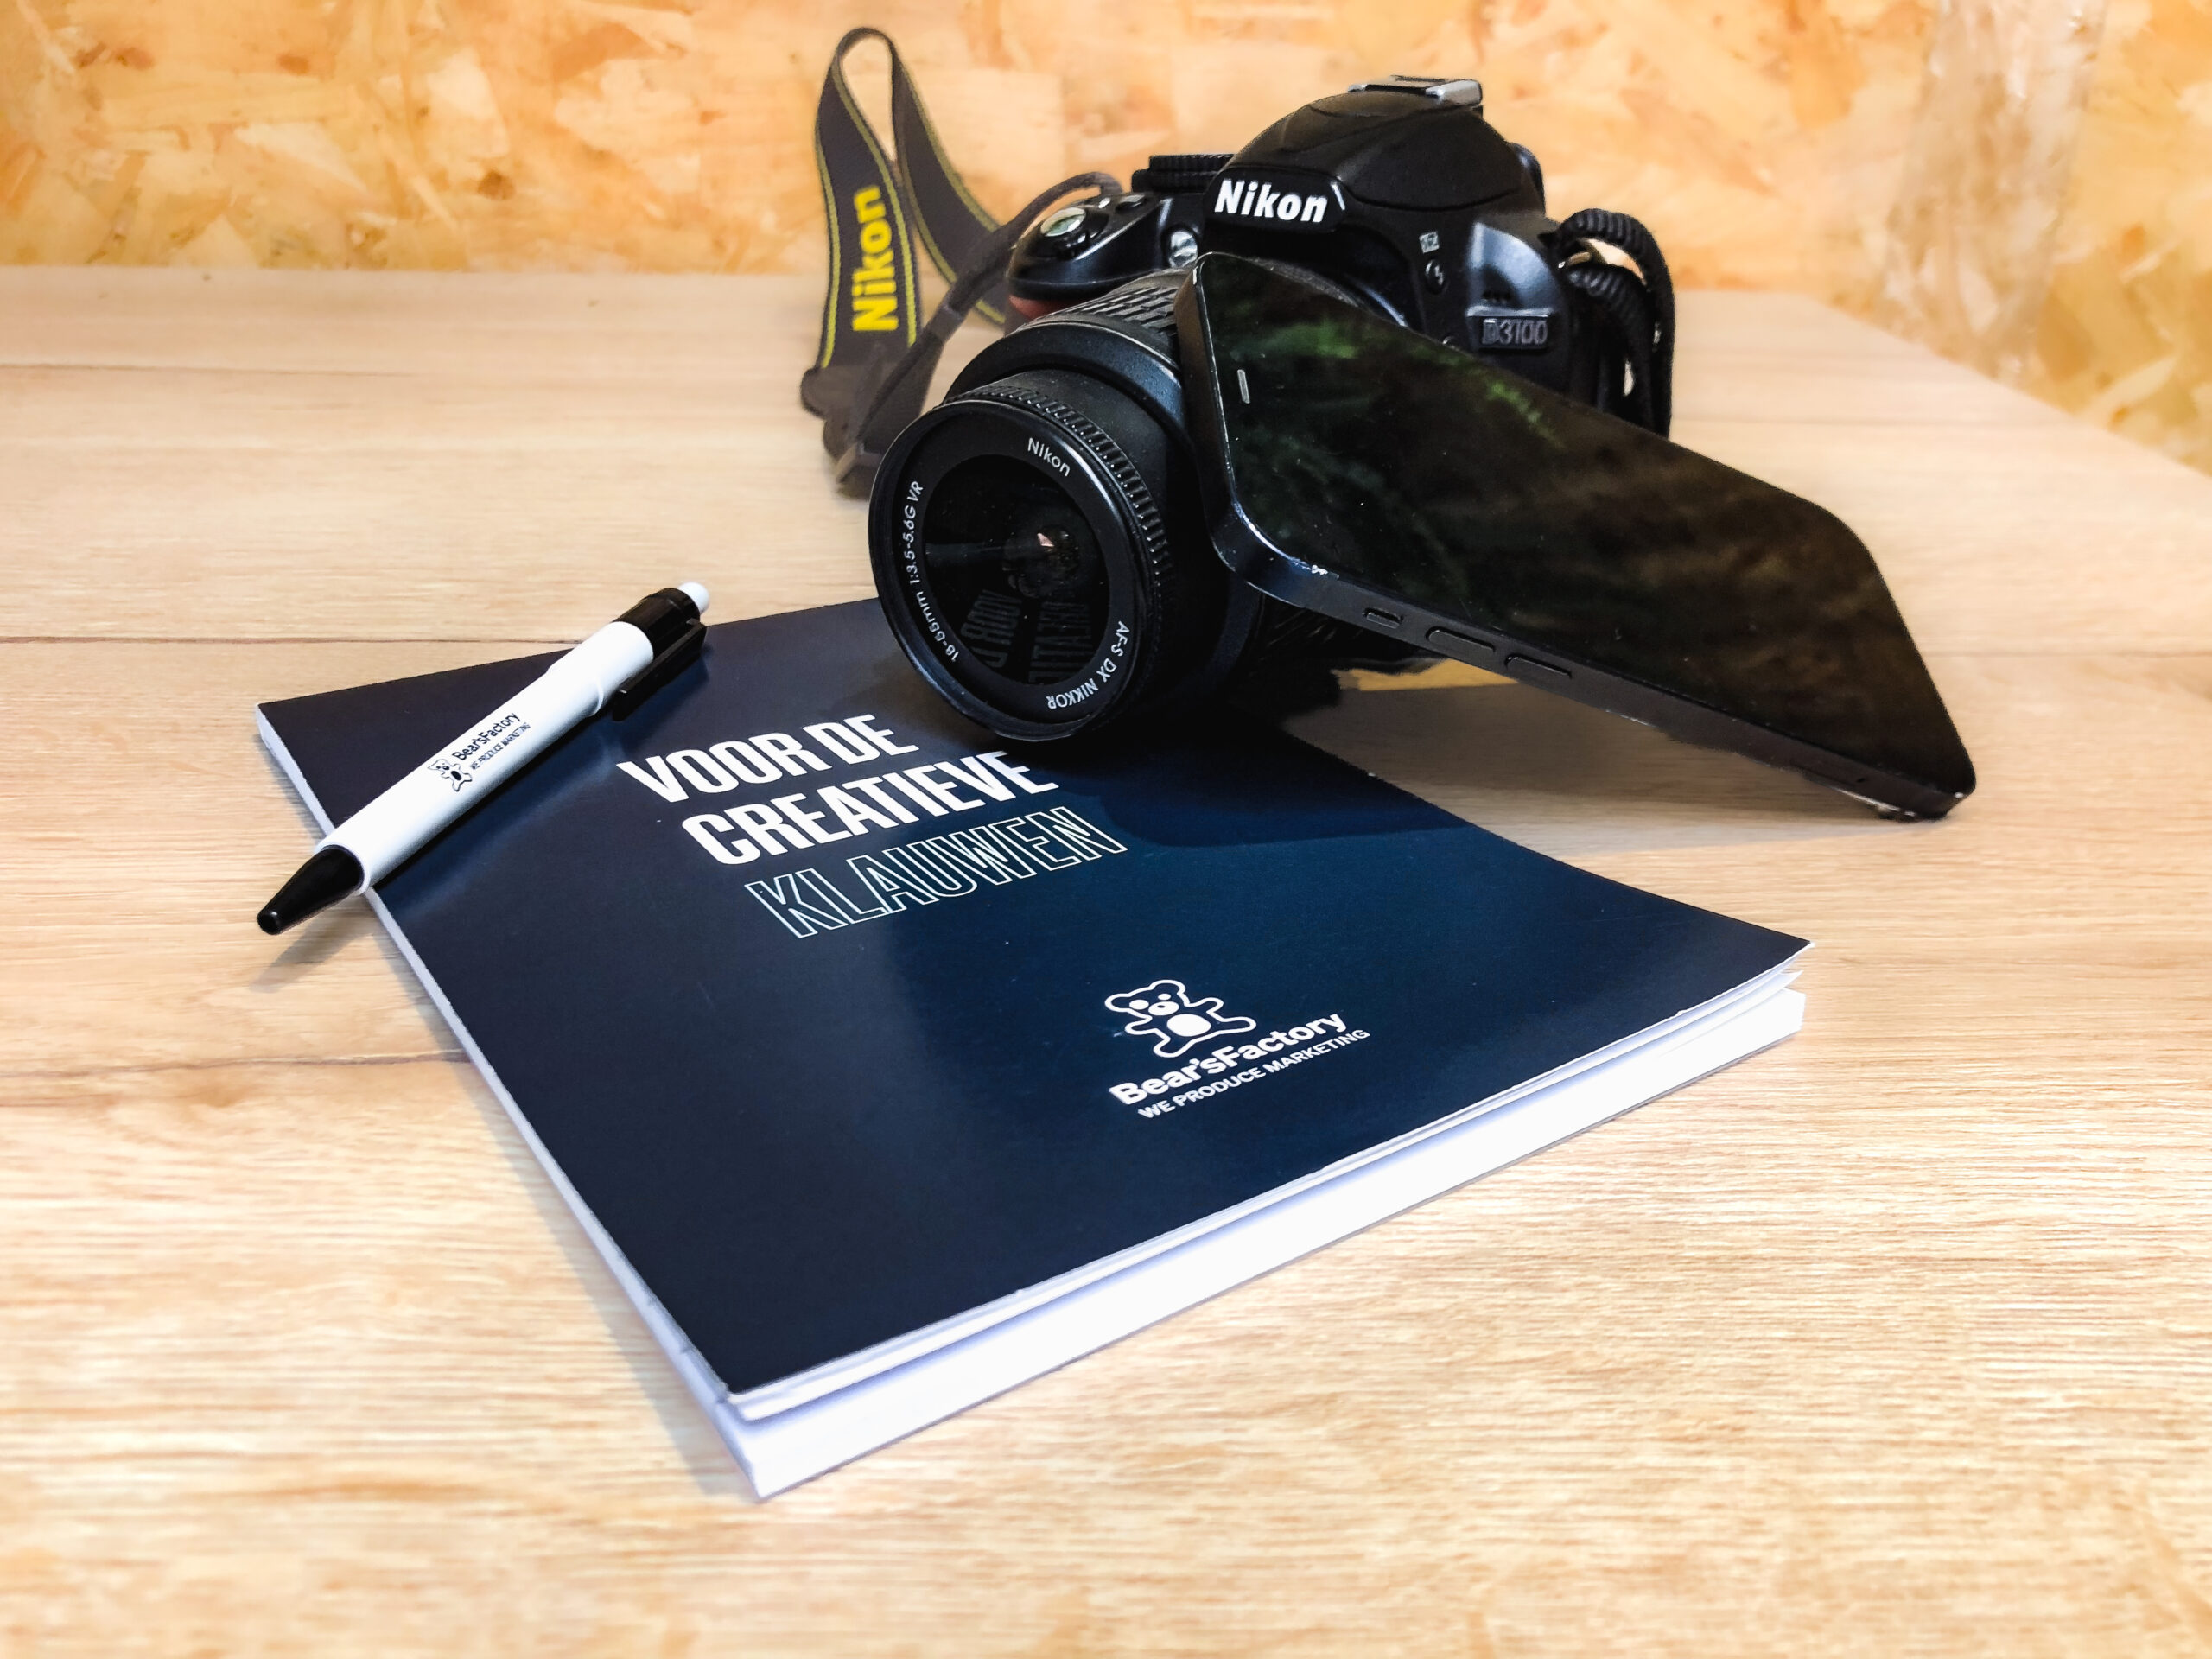 Compositie van Bear's Factory notitieblok en pen, Nikon camera en telefoon.